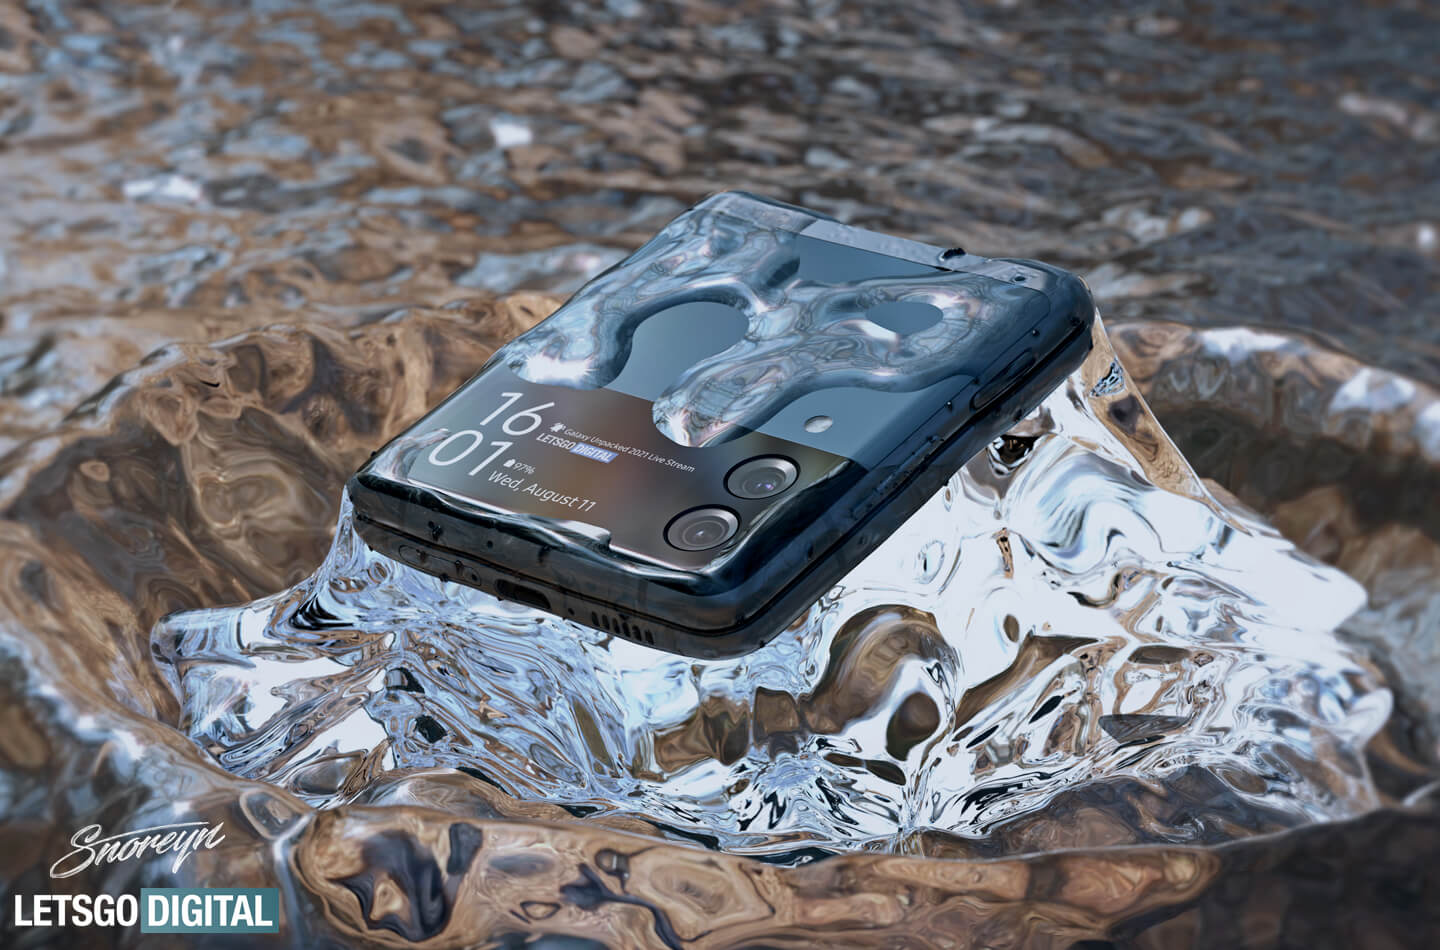 Galaxy Z Flip 3 waterproof